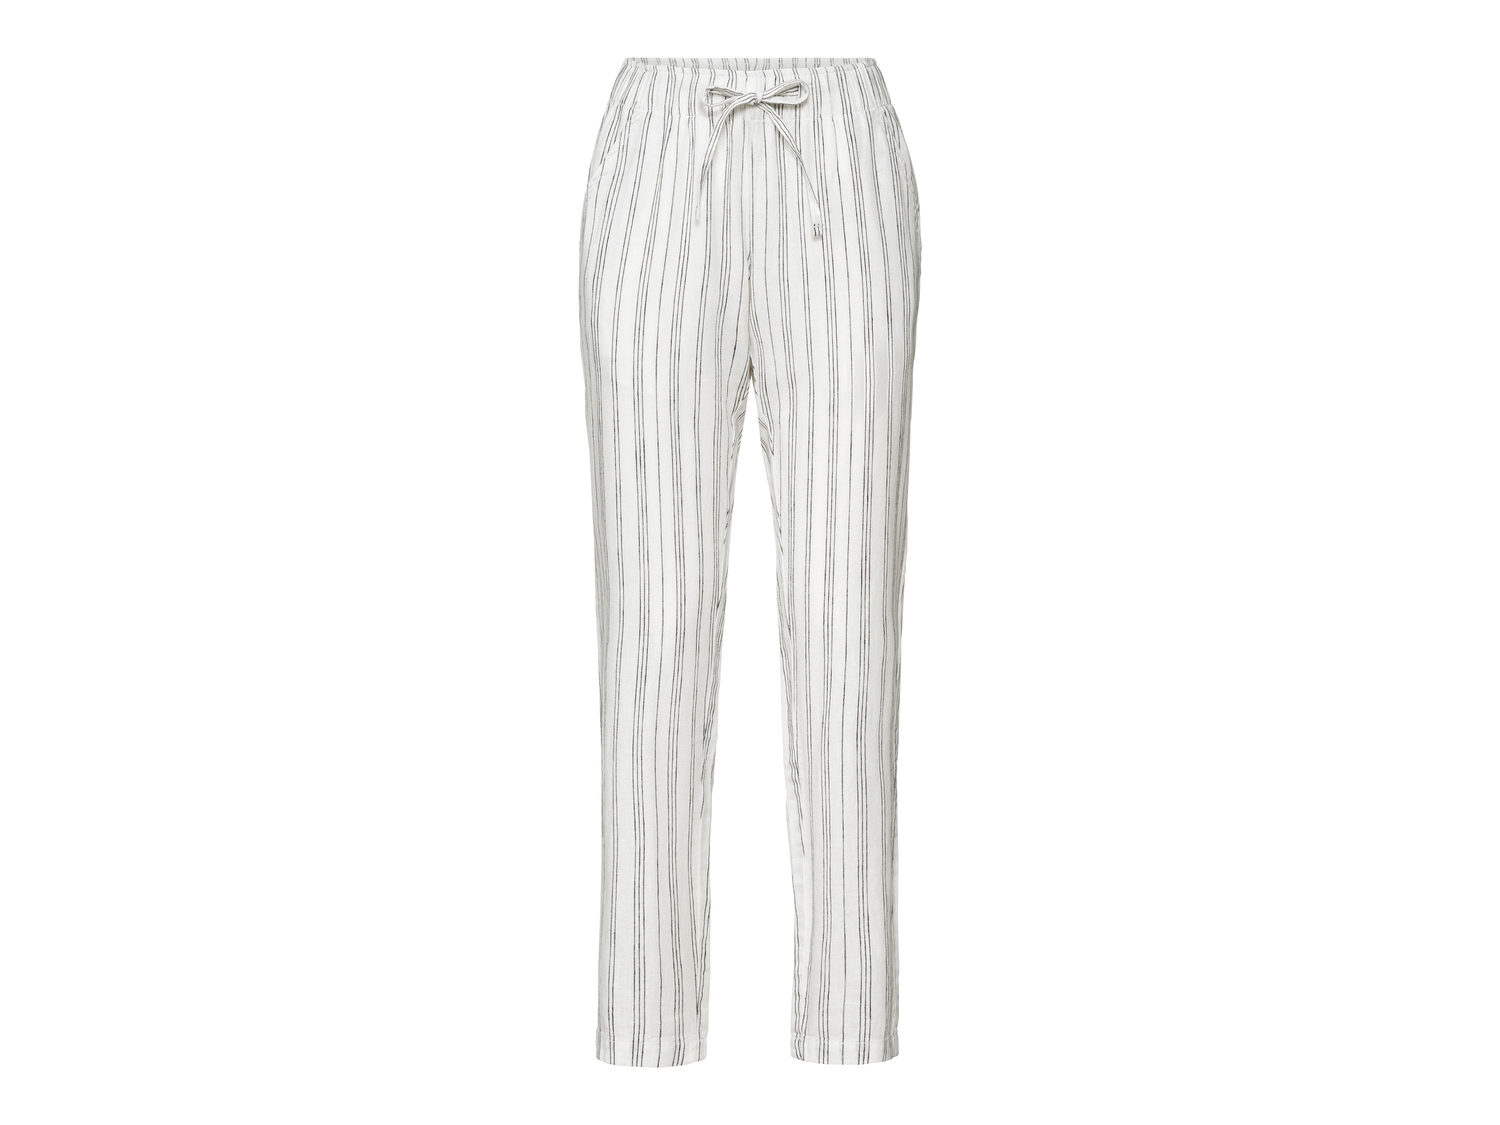 Pantaloni in lino da donna Esmara, prezzo 8.99 &#8364; 
Misure: 38-48
Taglie ...